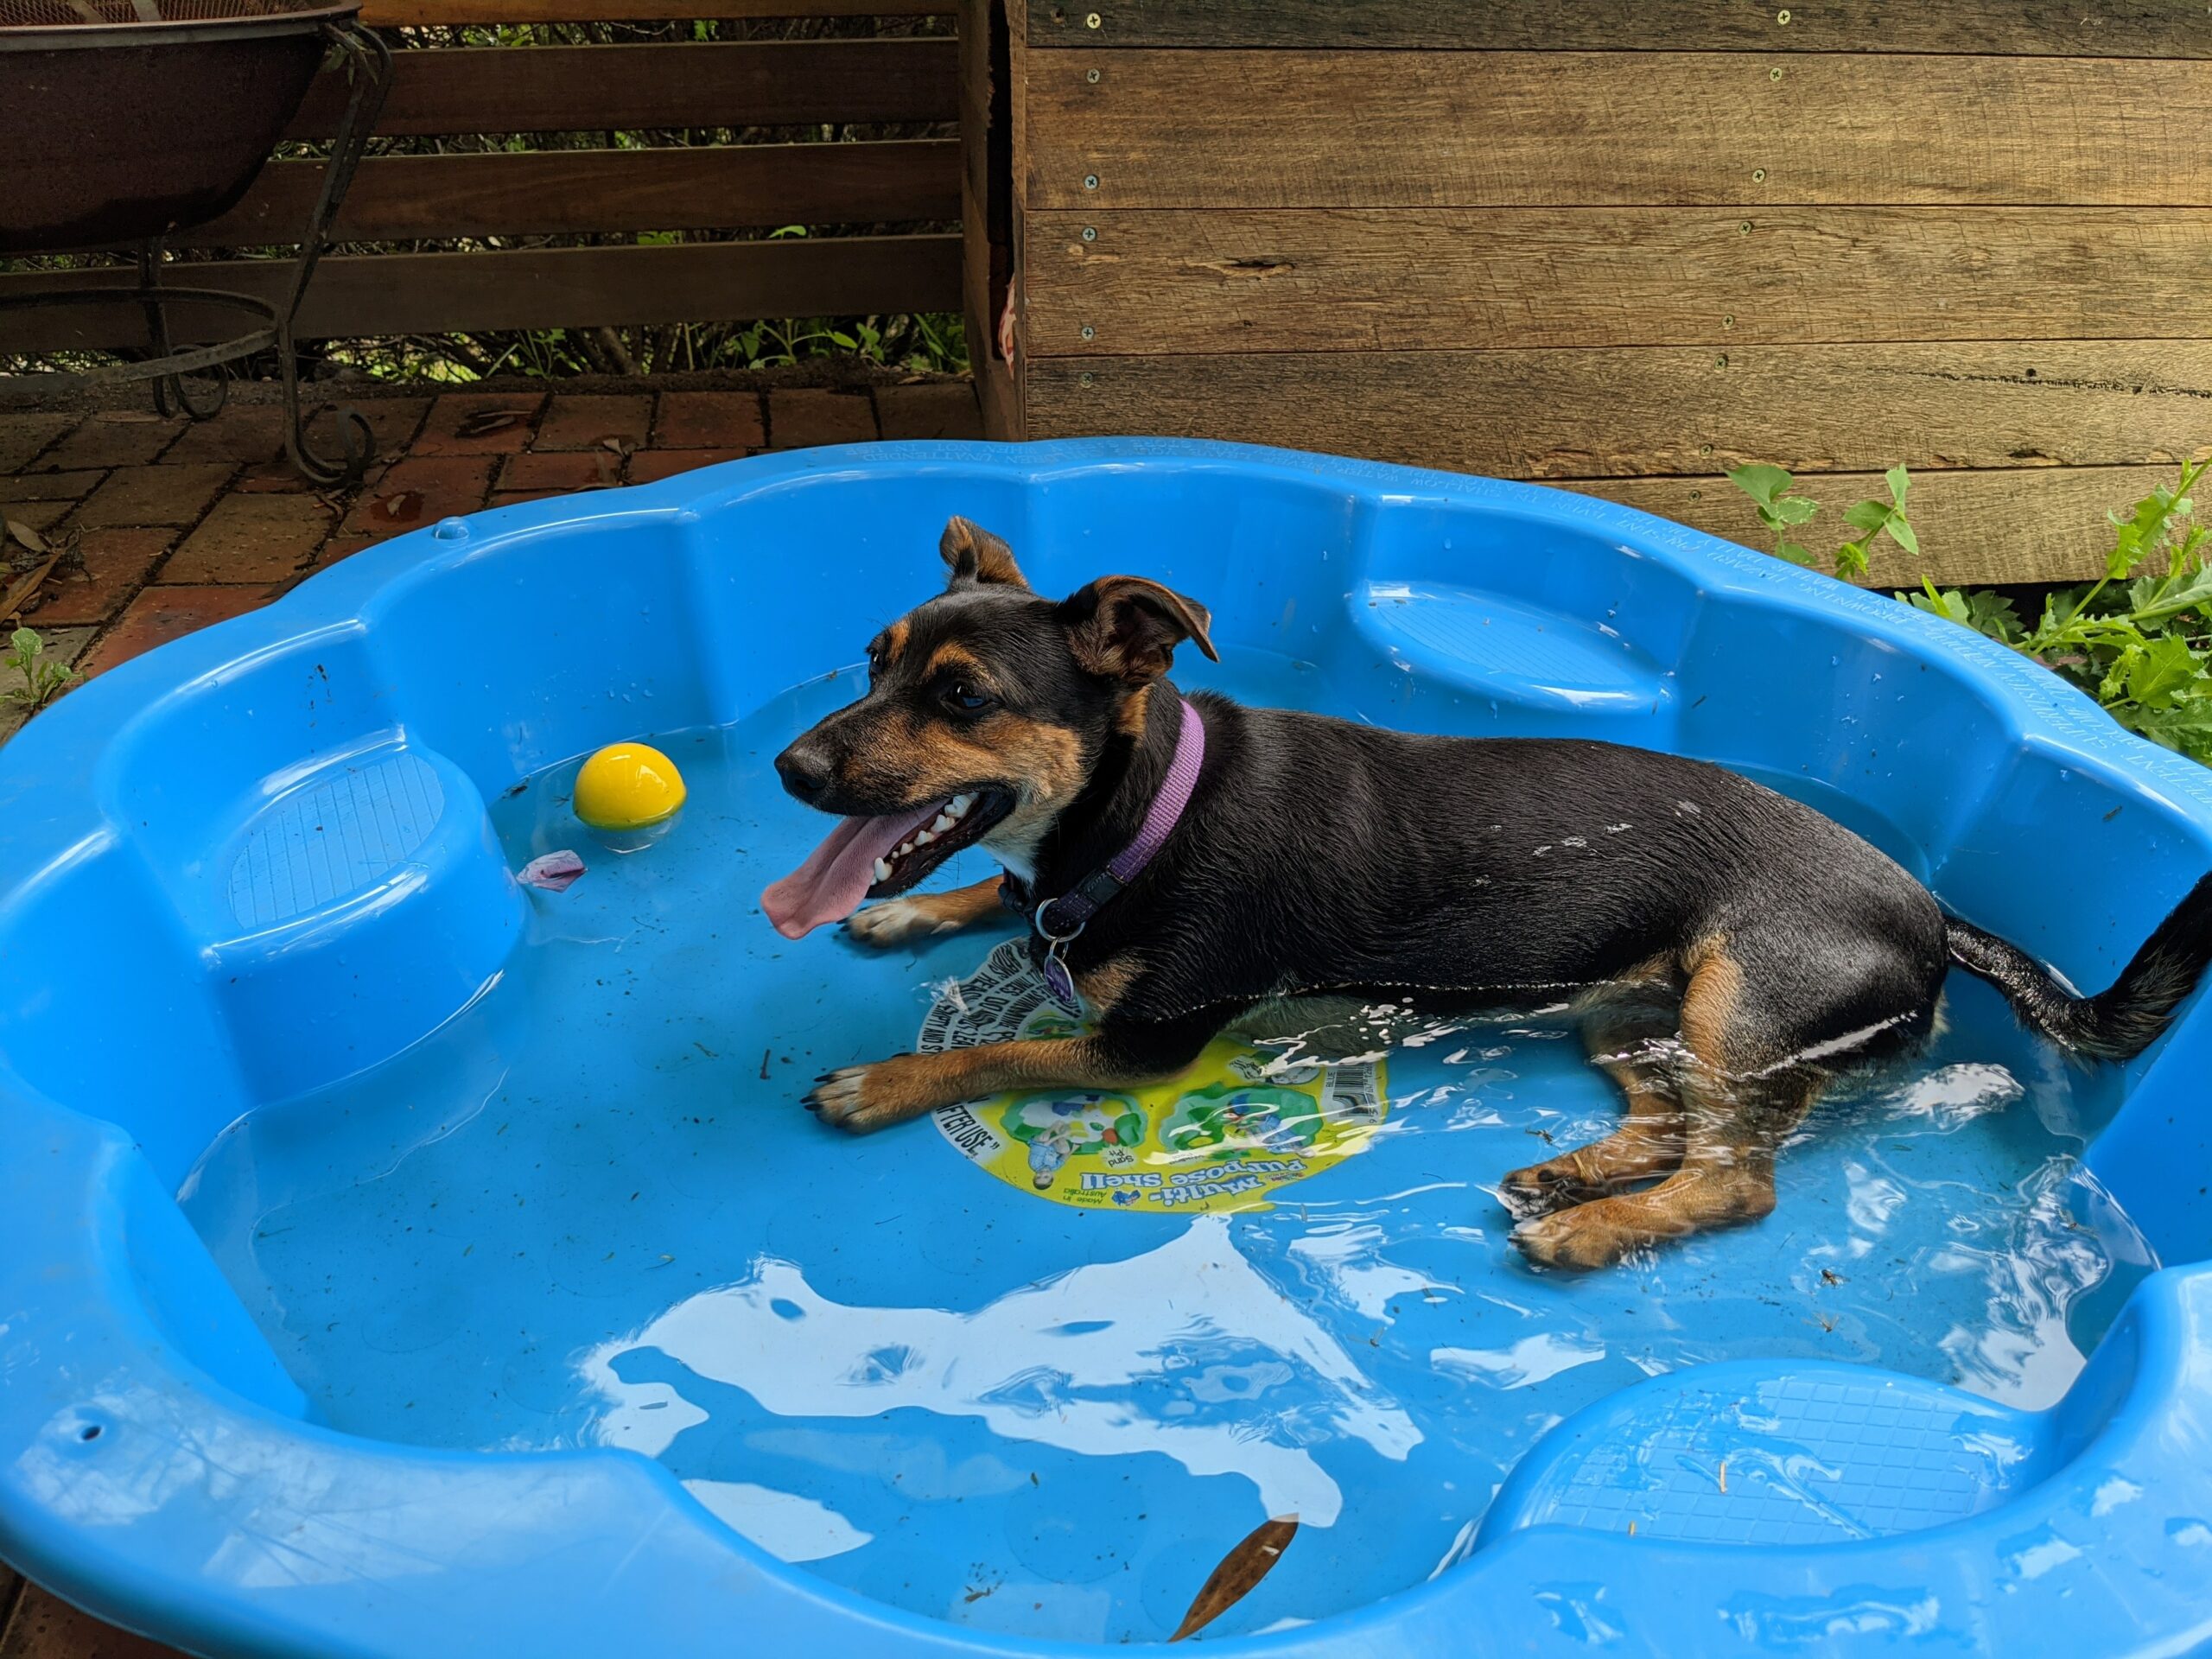 Dog relaxing in a kiddie pool.